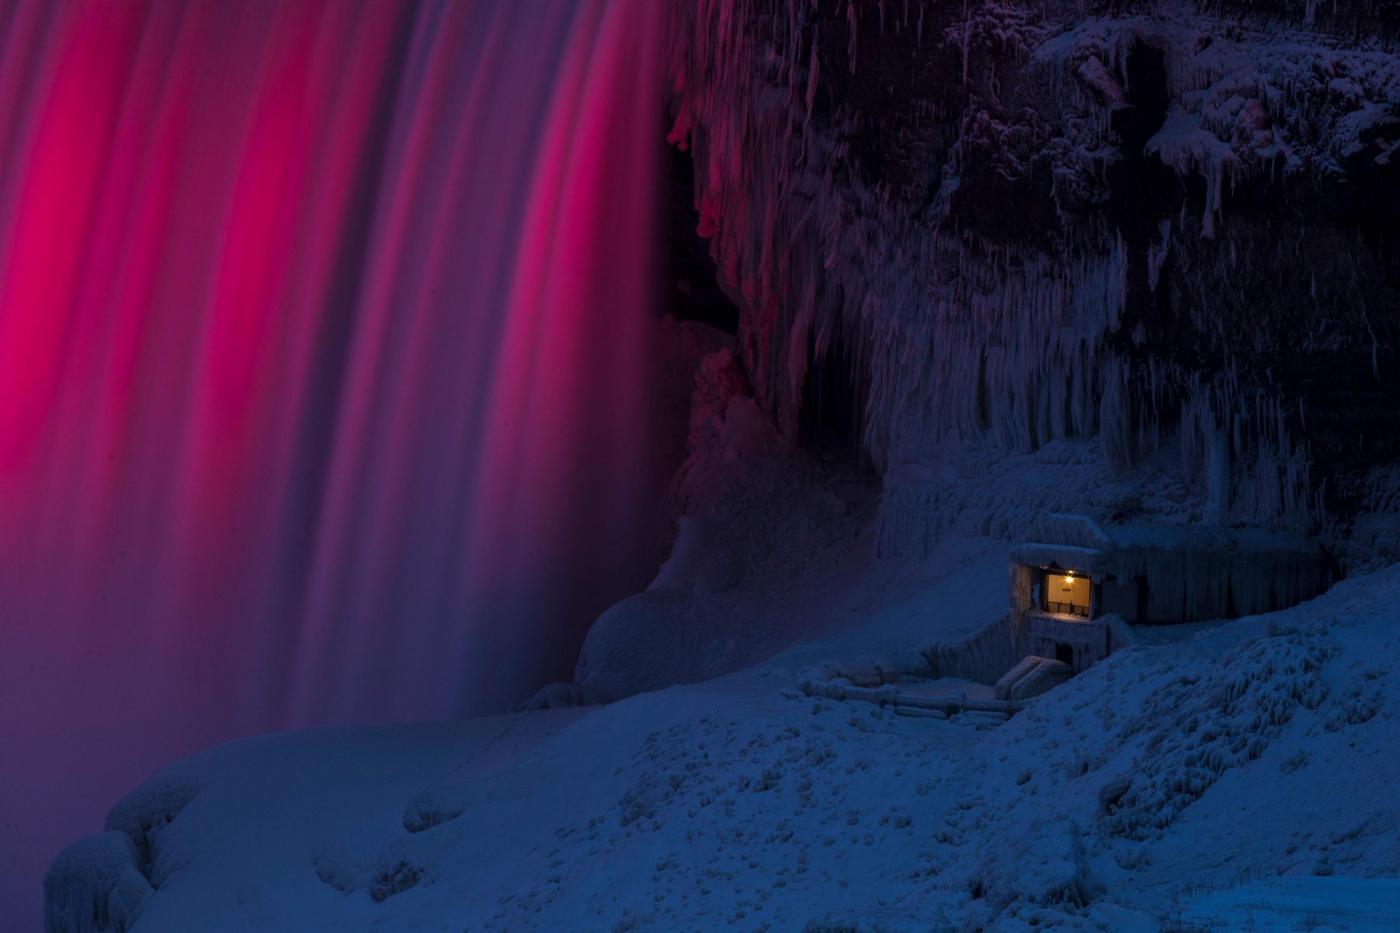 cascate Niagara ghiacciate